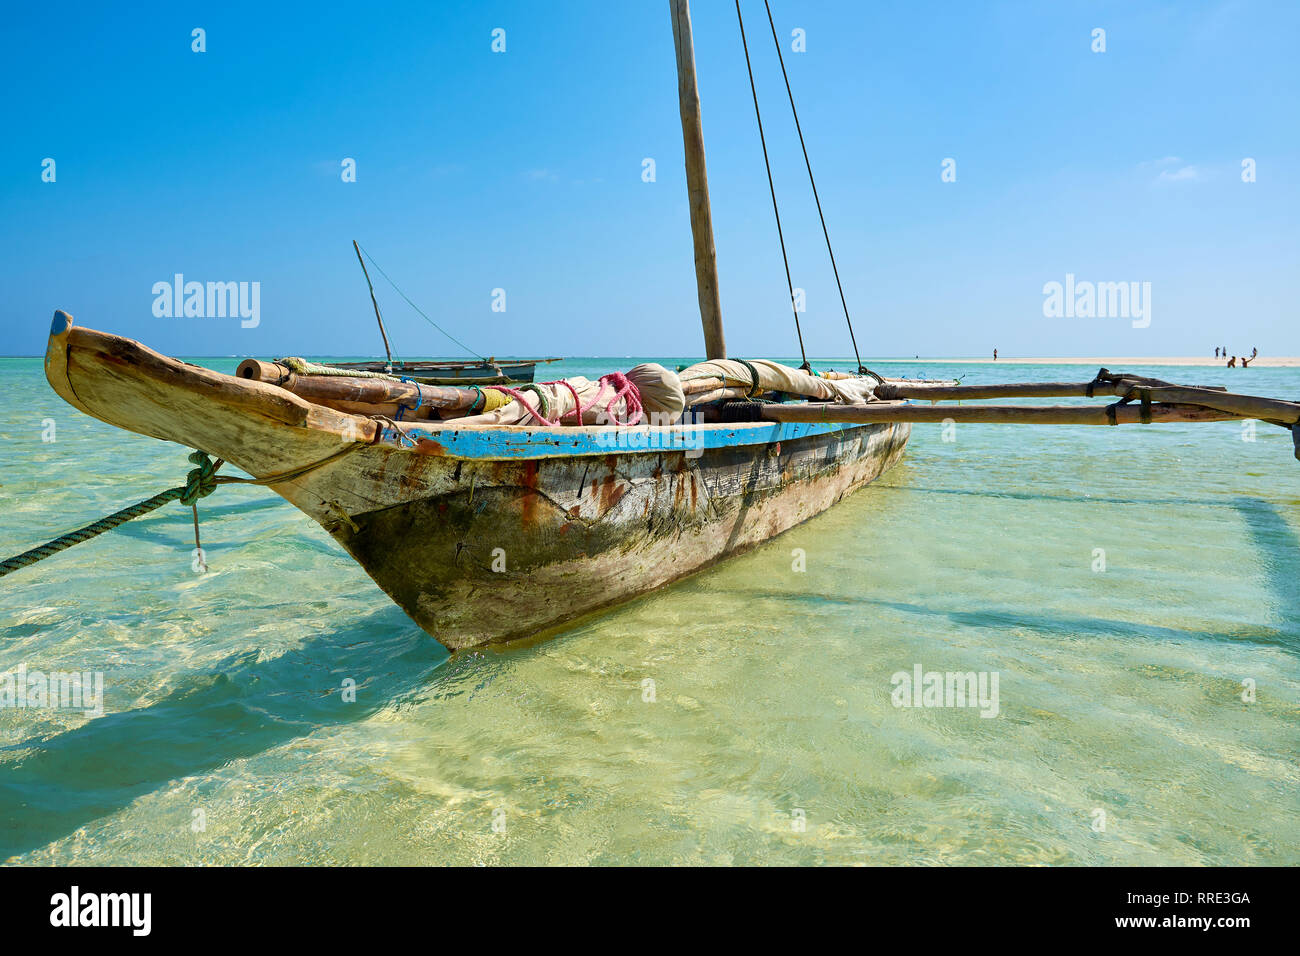 Avis d'un vieux bateau en bois ou en catamaran, ancré au large de la côte du Kenya en Afrique dans la mer limpide. Ciel bleu. Banque D'Images